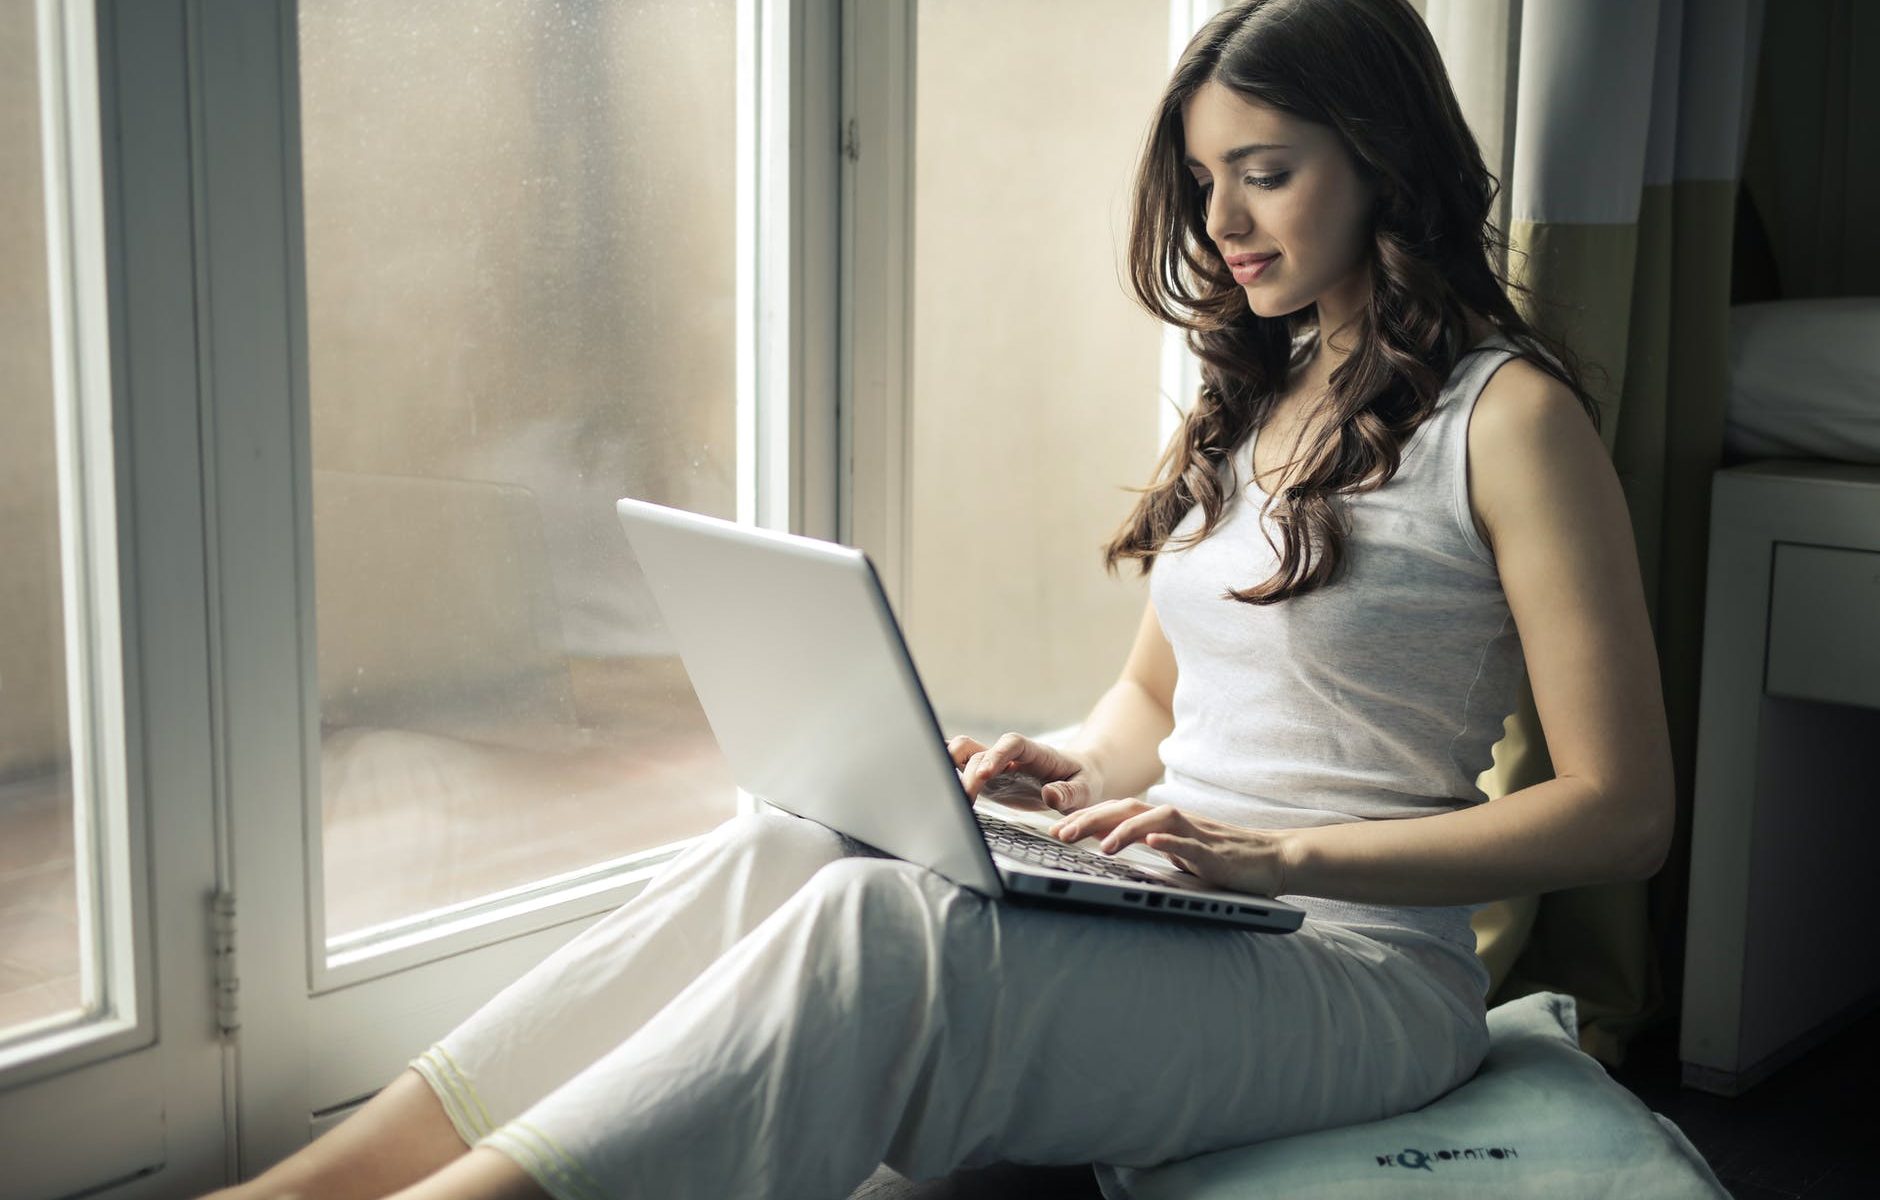 Frau sitzt am Fenster auf einem Kissen und surft mit einem Notebook im Web, sieht sich Webseiten an. Sie macht sich Gedanken über die Zukunft des Webs.